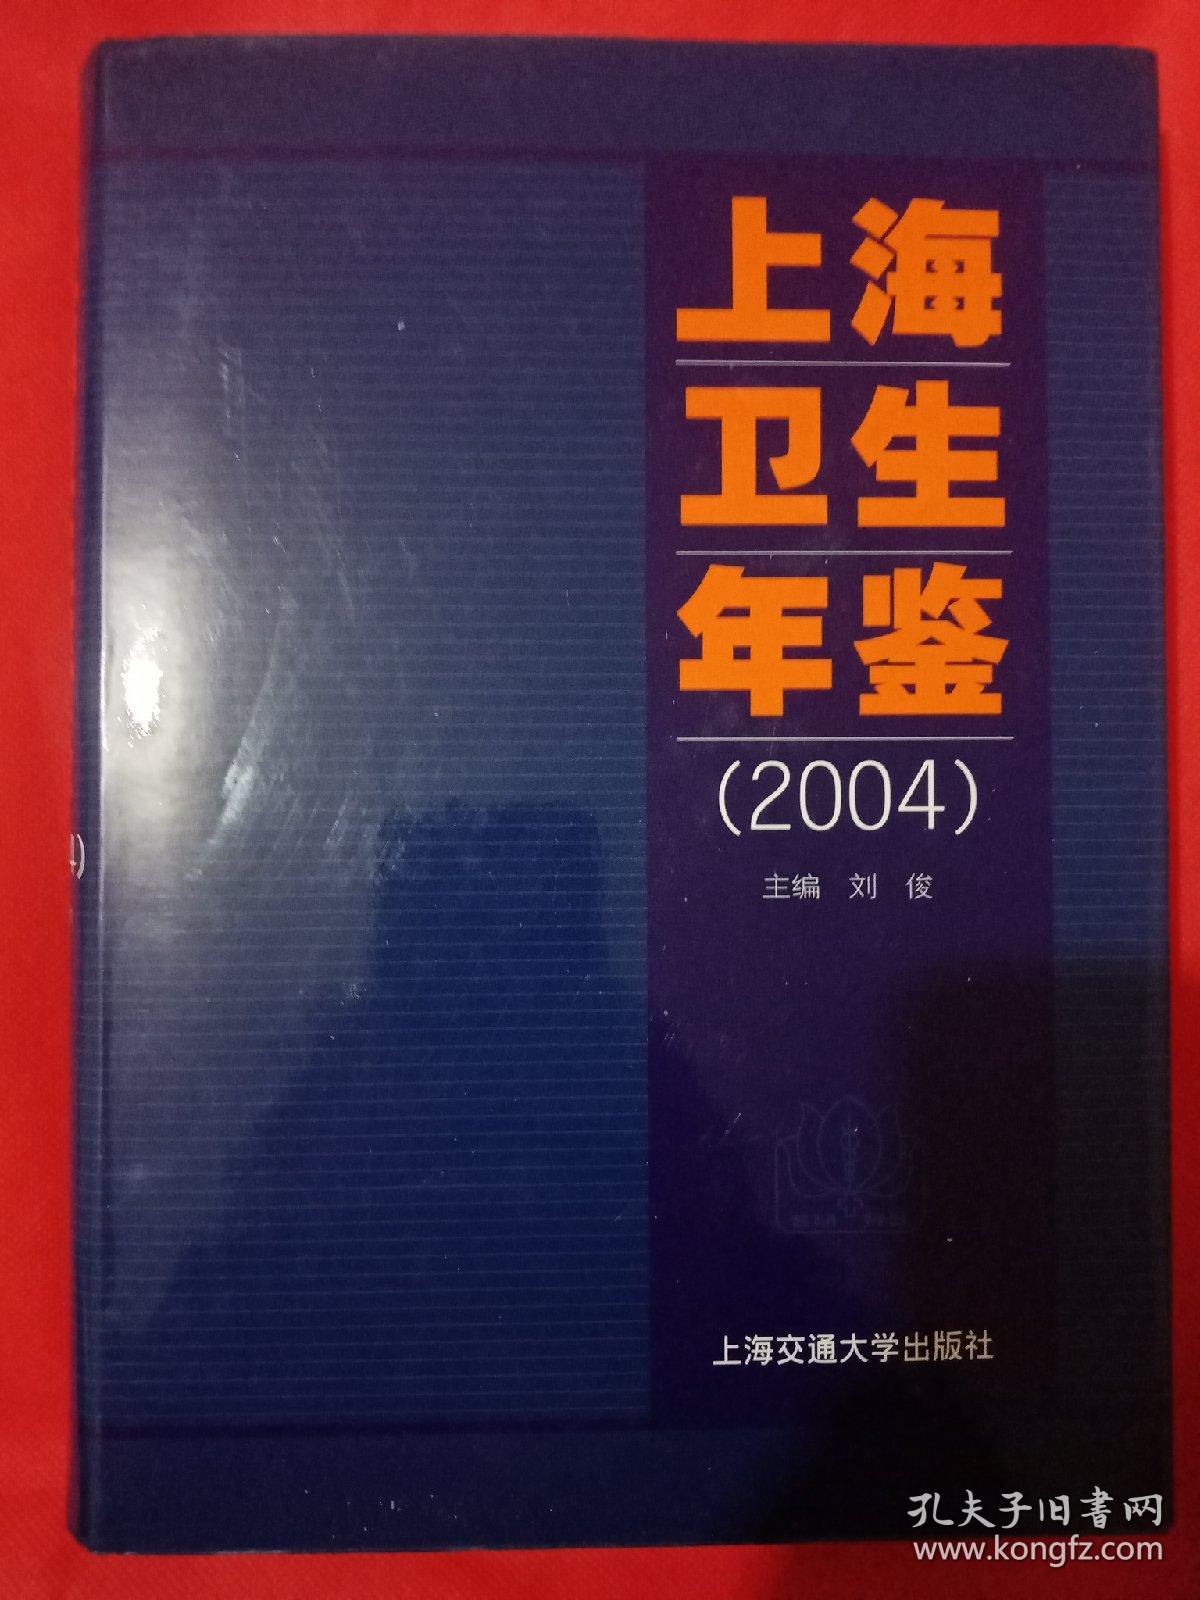 上海卫生年鉴2004